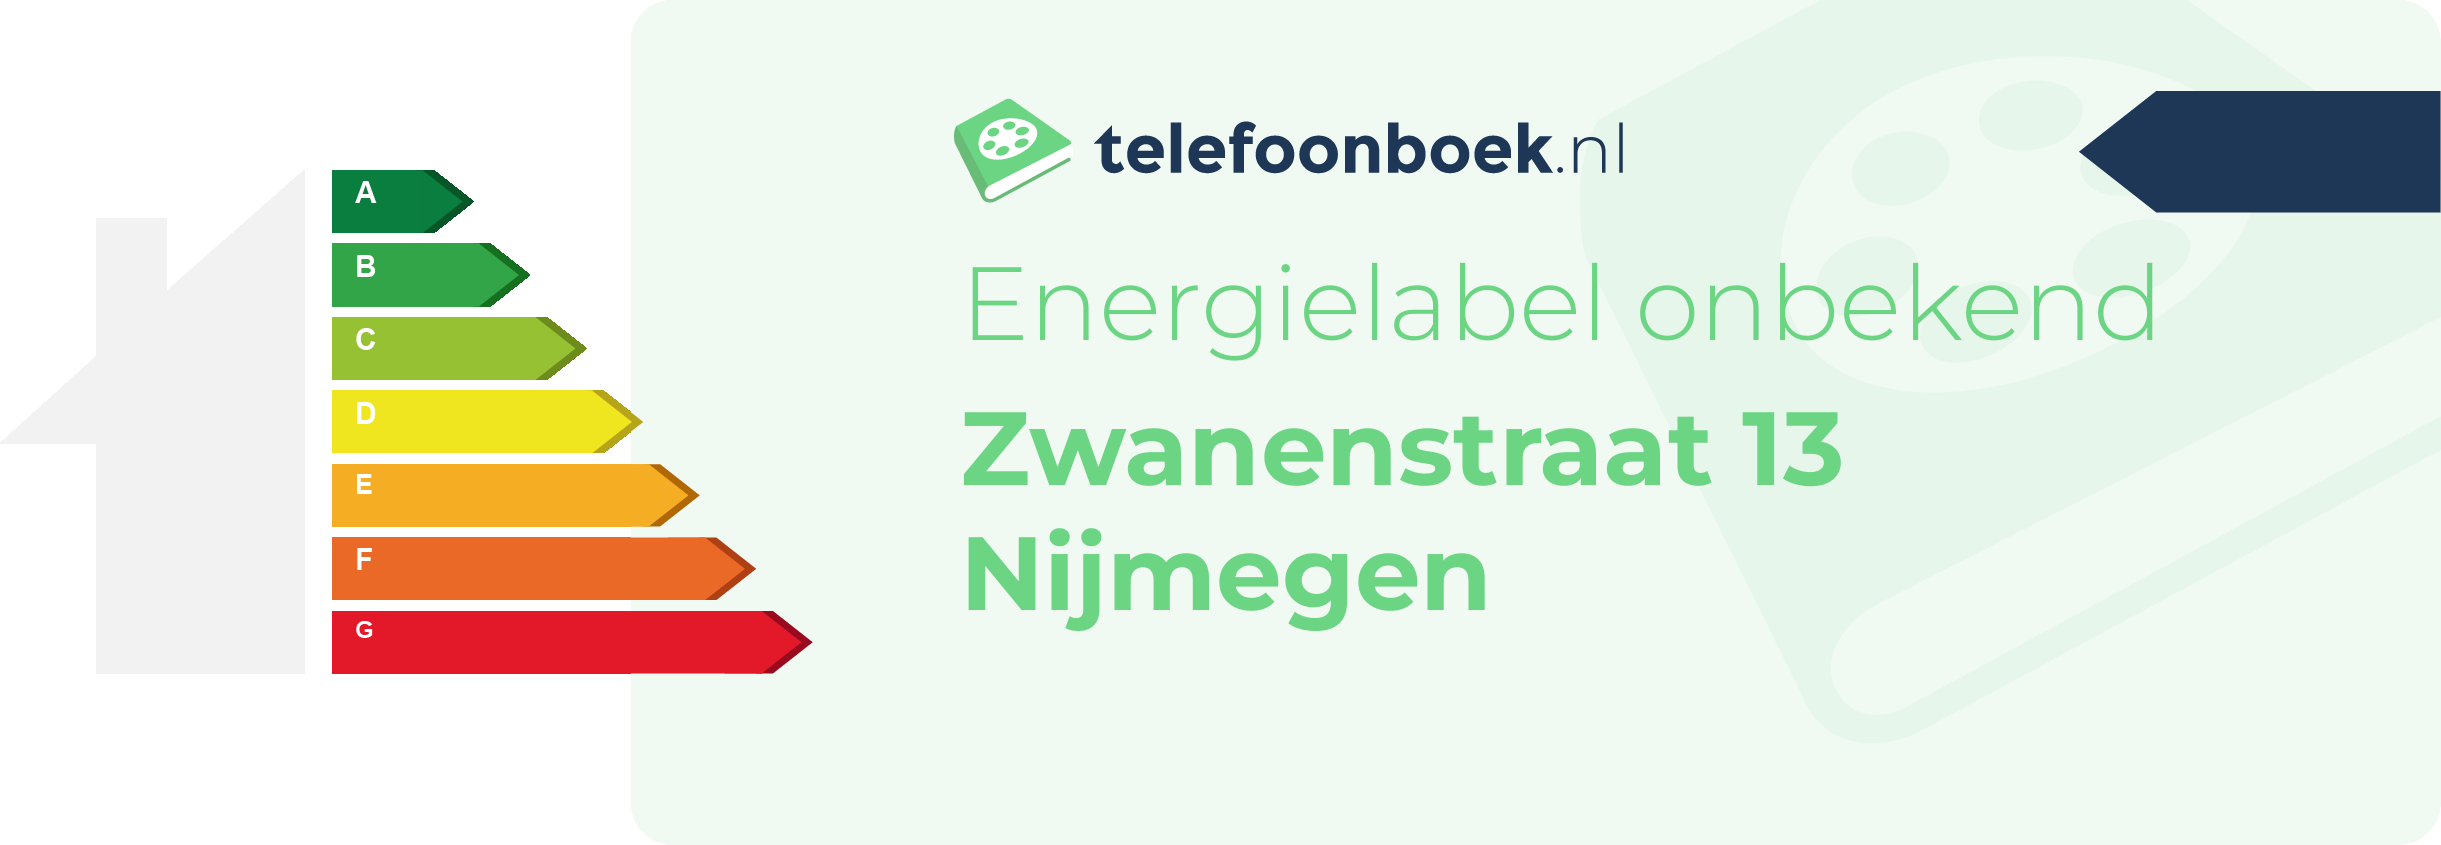 Energielabel Zwanenstraat 13 Nijmegen